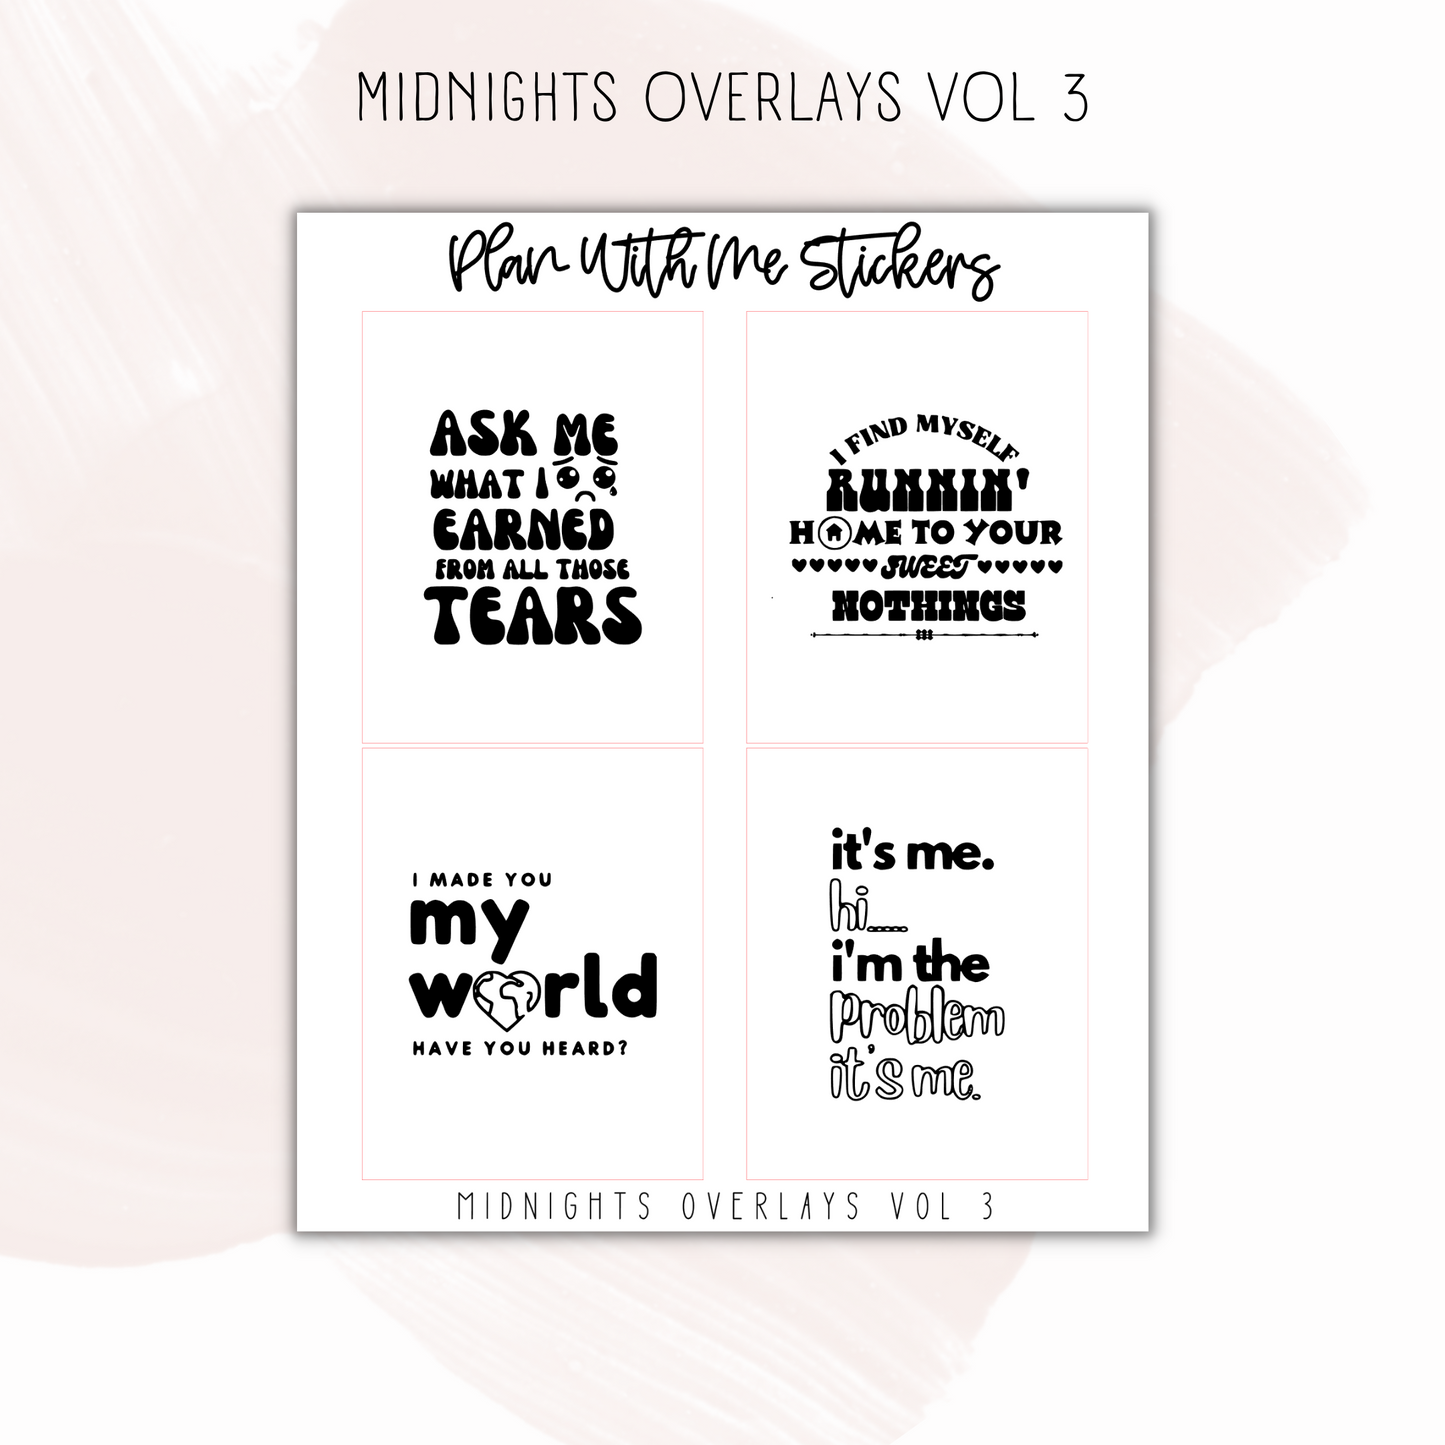 Midnights Overlays Vol 3